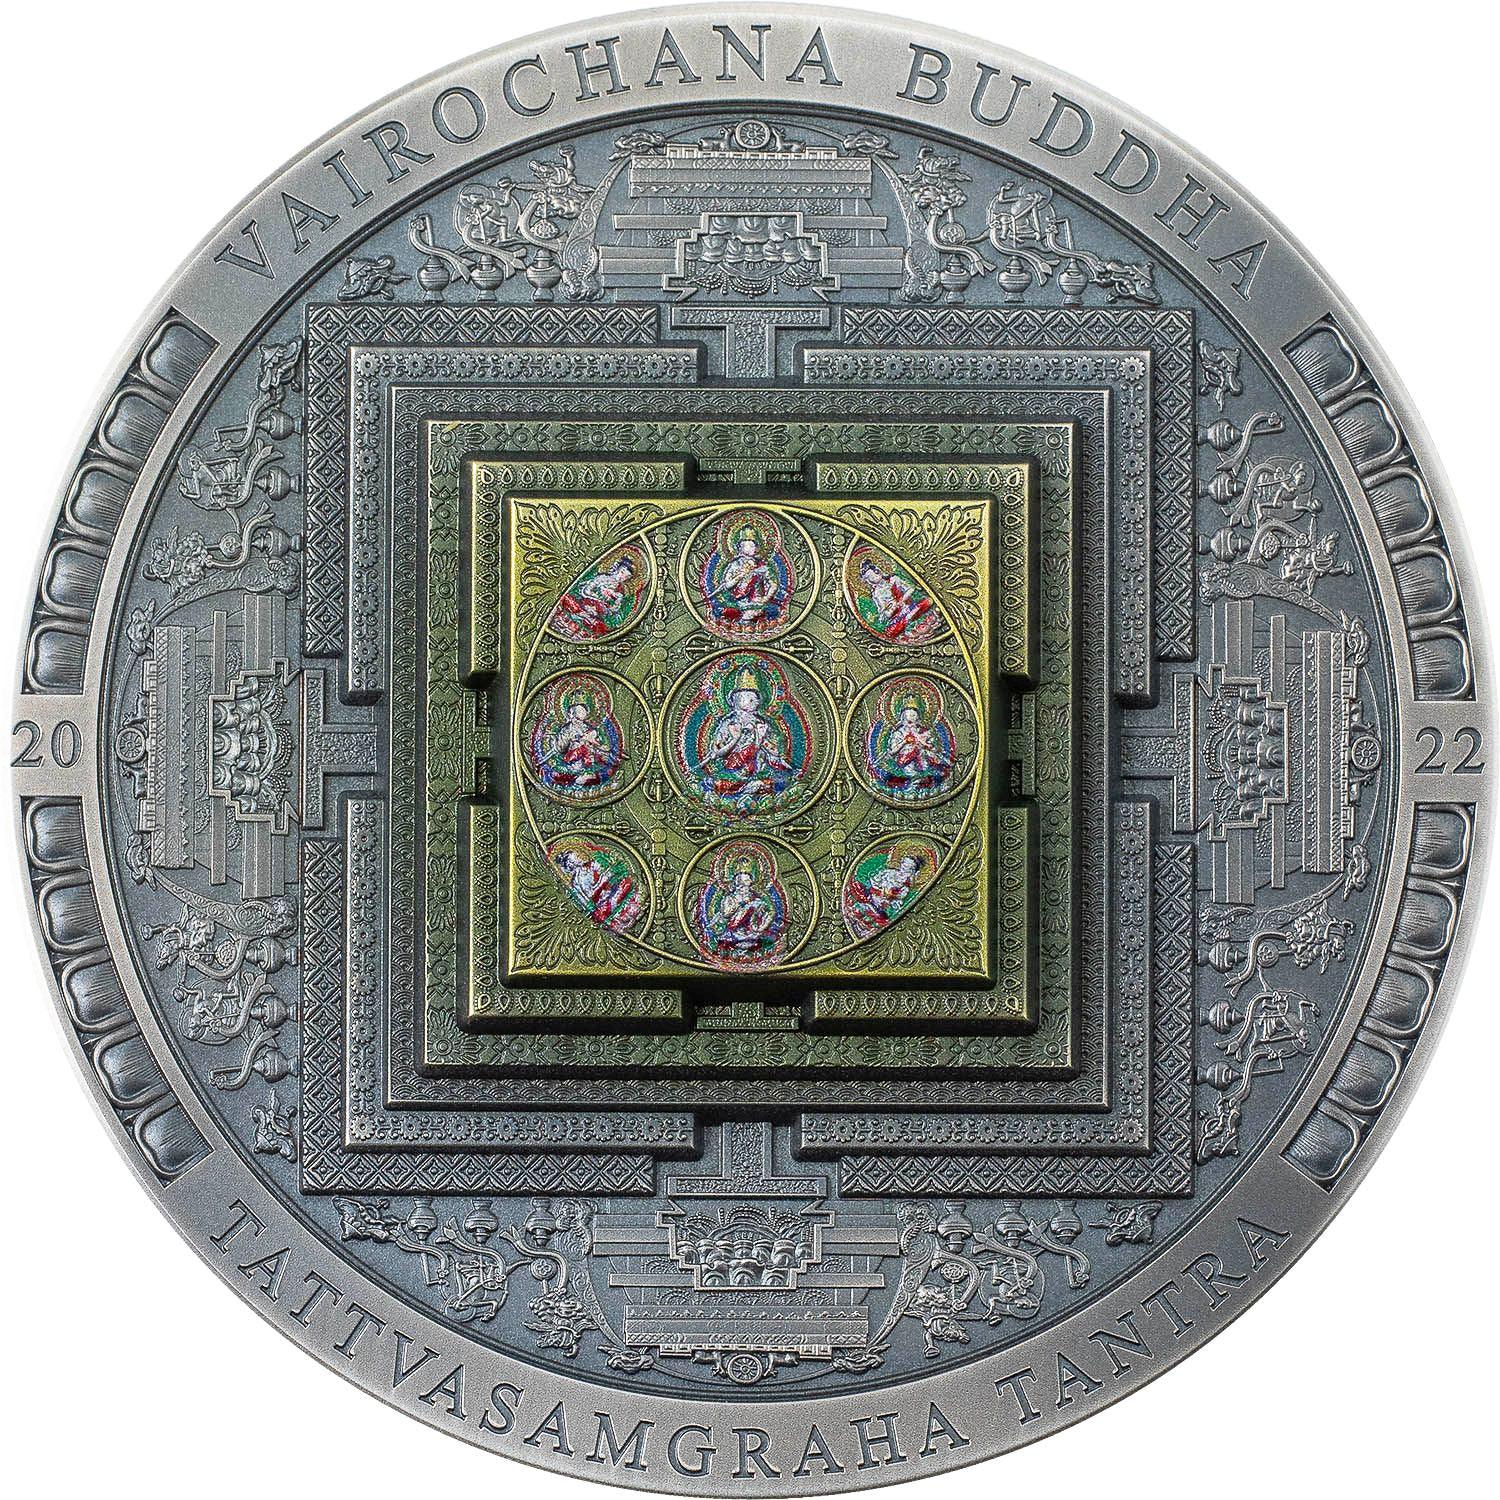 Discover Rare Mongolian Collectible Coins | Parthava Coin